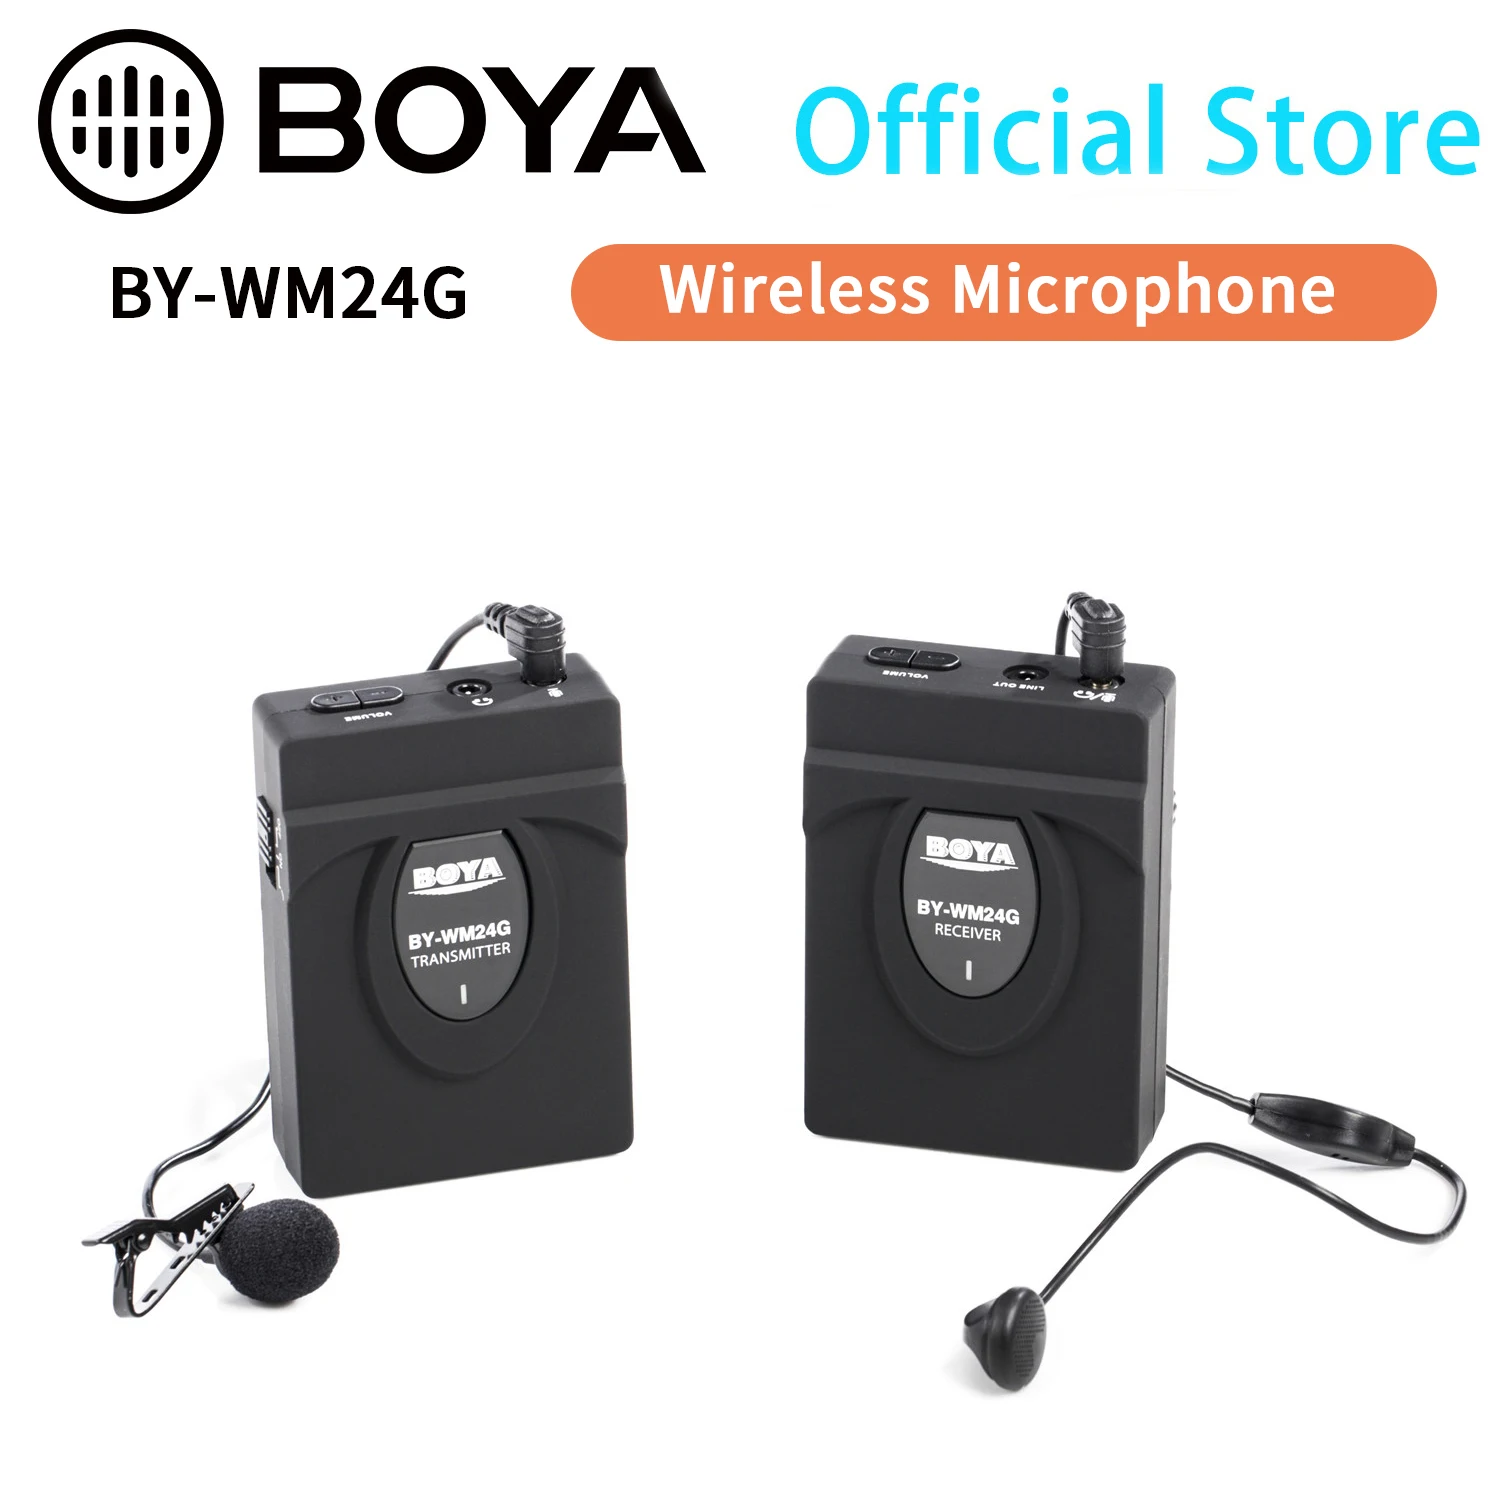 

Беспроводной петличный микрофон BOYA BY-WM24G 2,4 ГГц для камеры, видеокамеры, DV-рекордера, Gopro, интервью, YouTube, видео, Vlog, Facebook